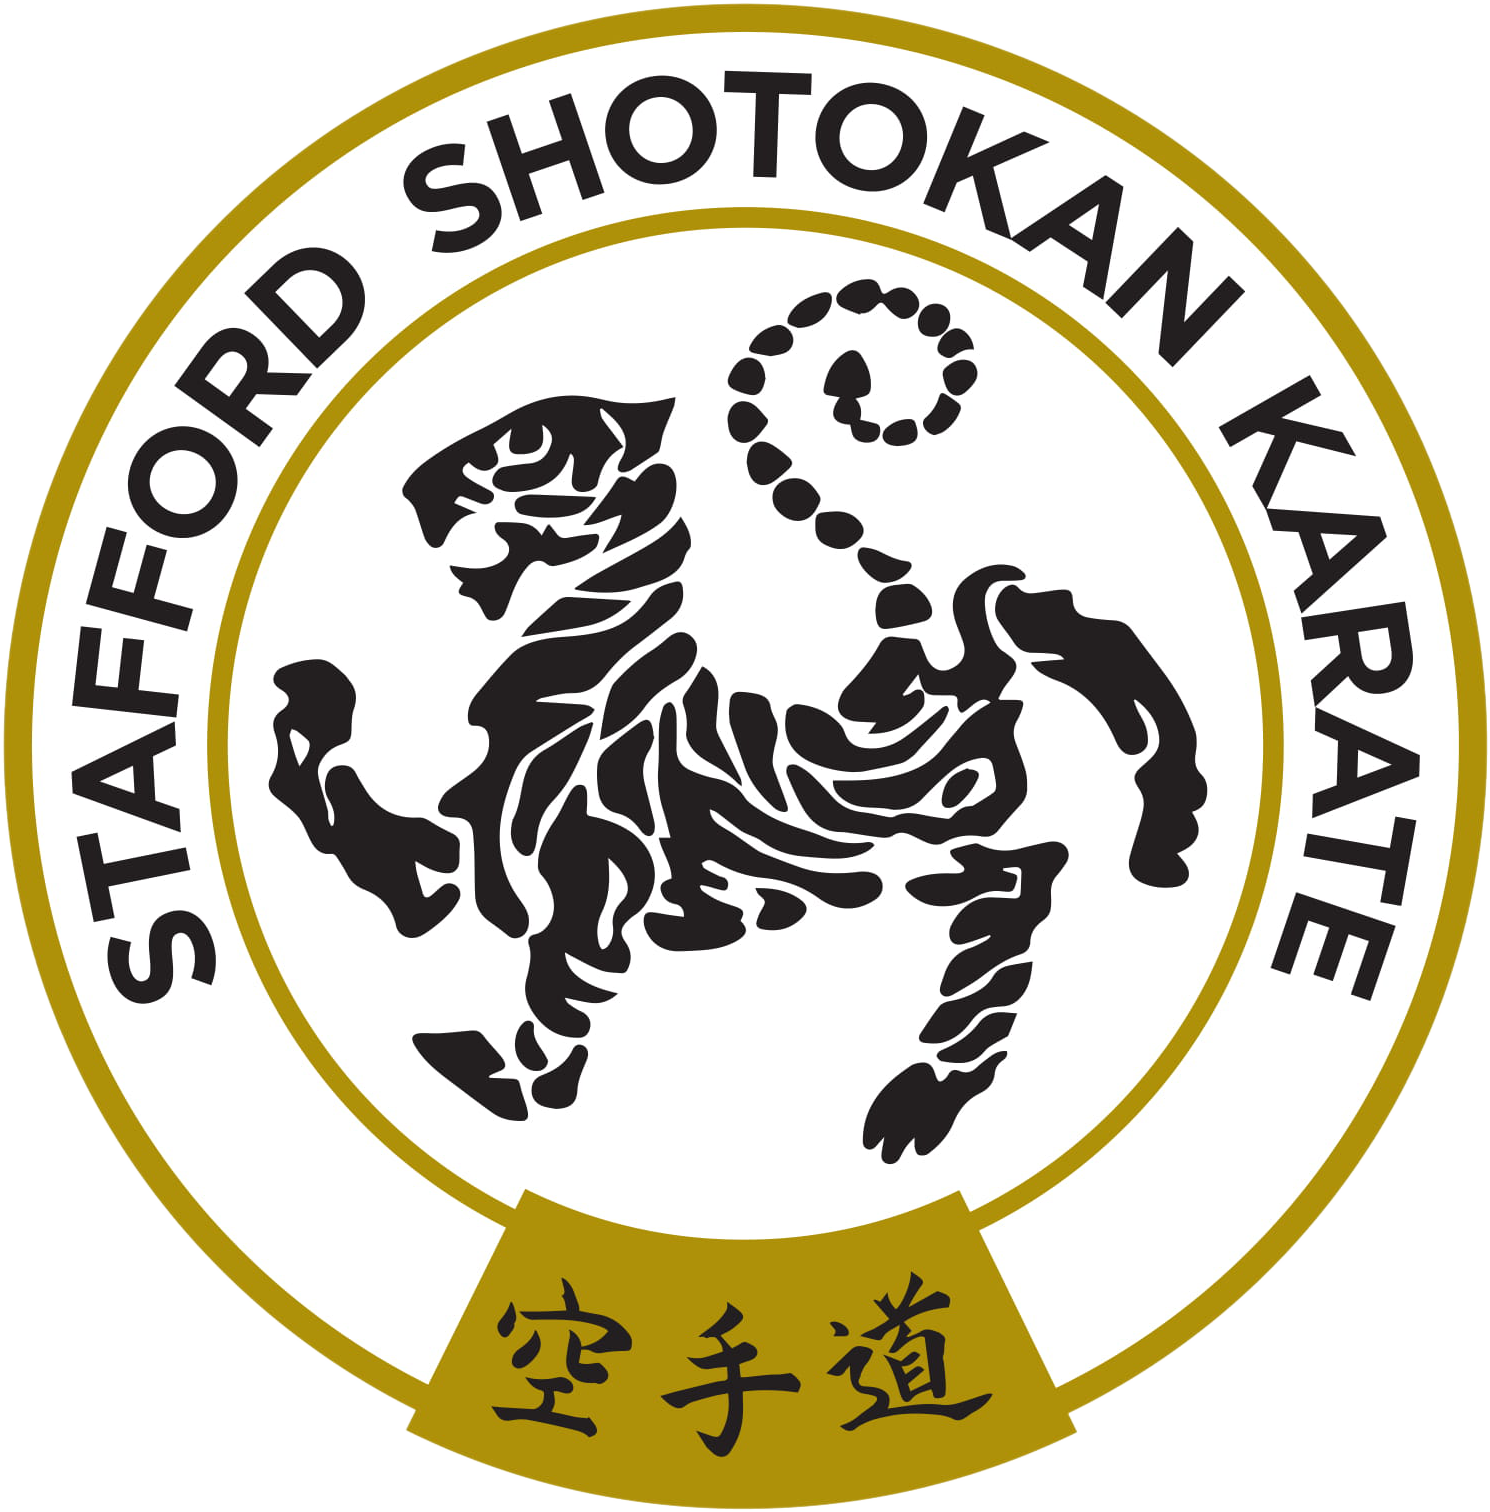 Stafford Shotokan Karate